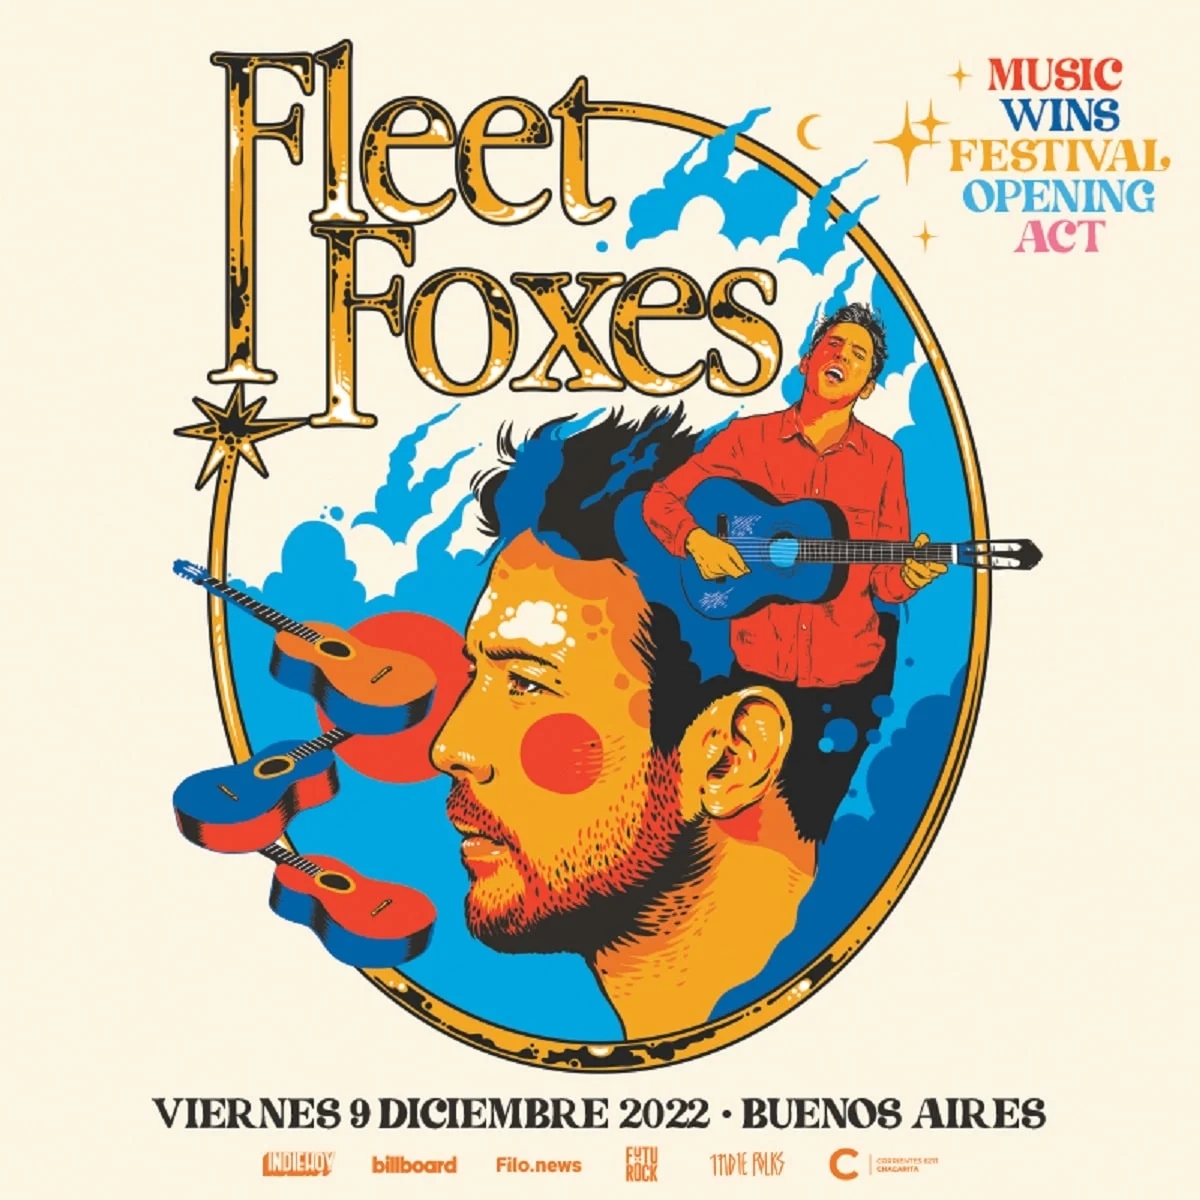 FLEET FOXES: ABRIENDO LAS PUERTAS DEL MUSIC WINS FESTIVAL 